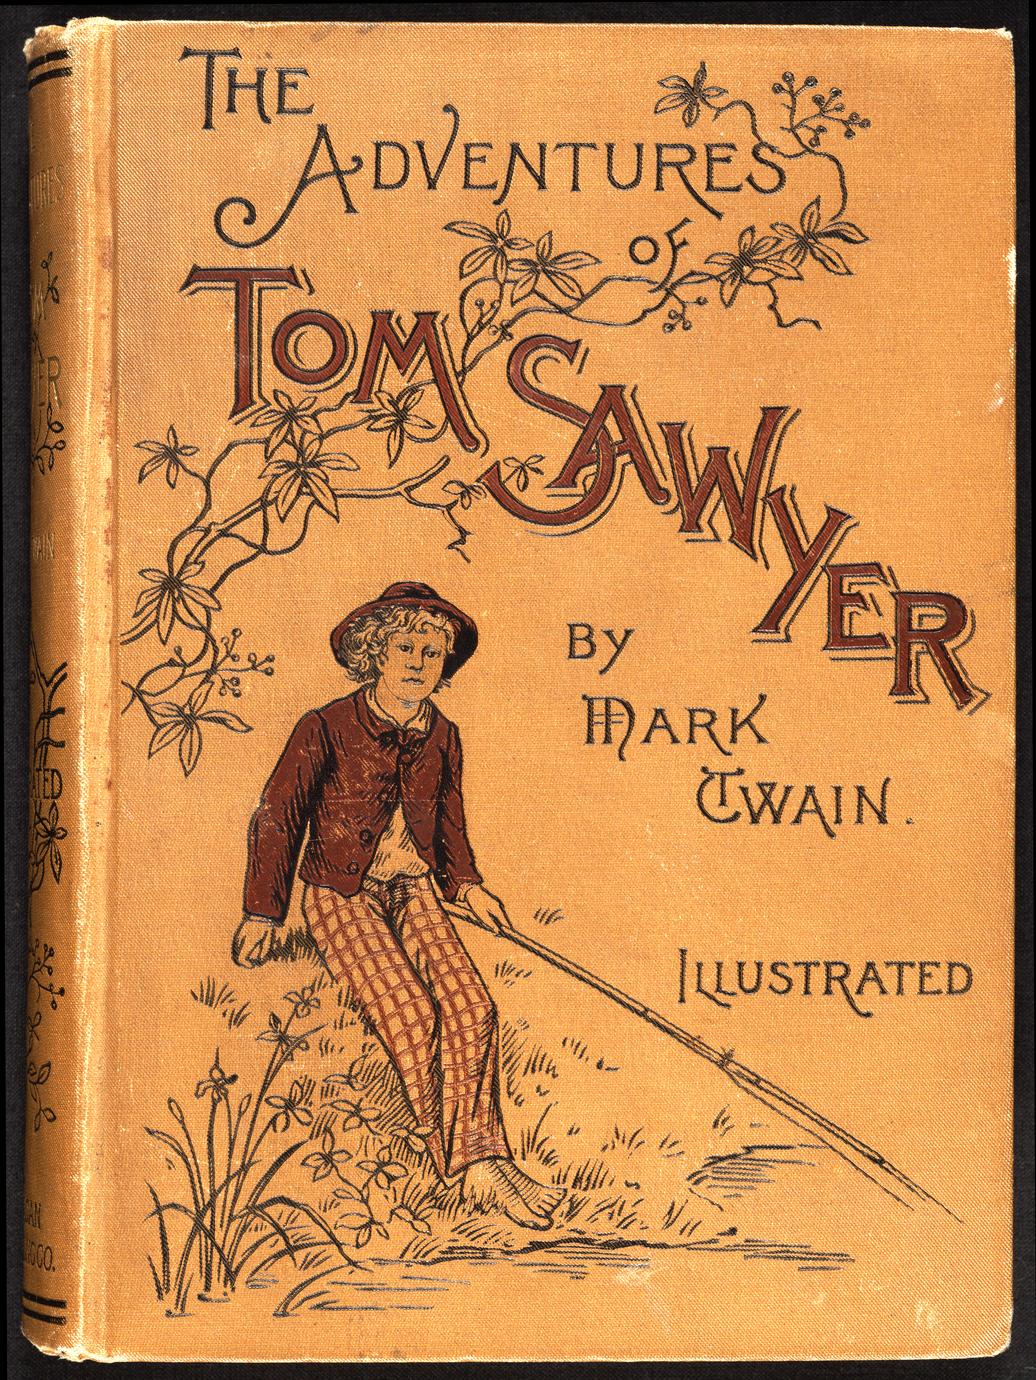 Приключения тома сойера книга купить. The Adventures of Tom Sawyer обложка. Tom Sawyer book Cover. Том Сойер обложка книги. Обложка книги приключения Тома Сойера.